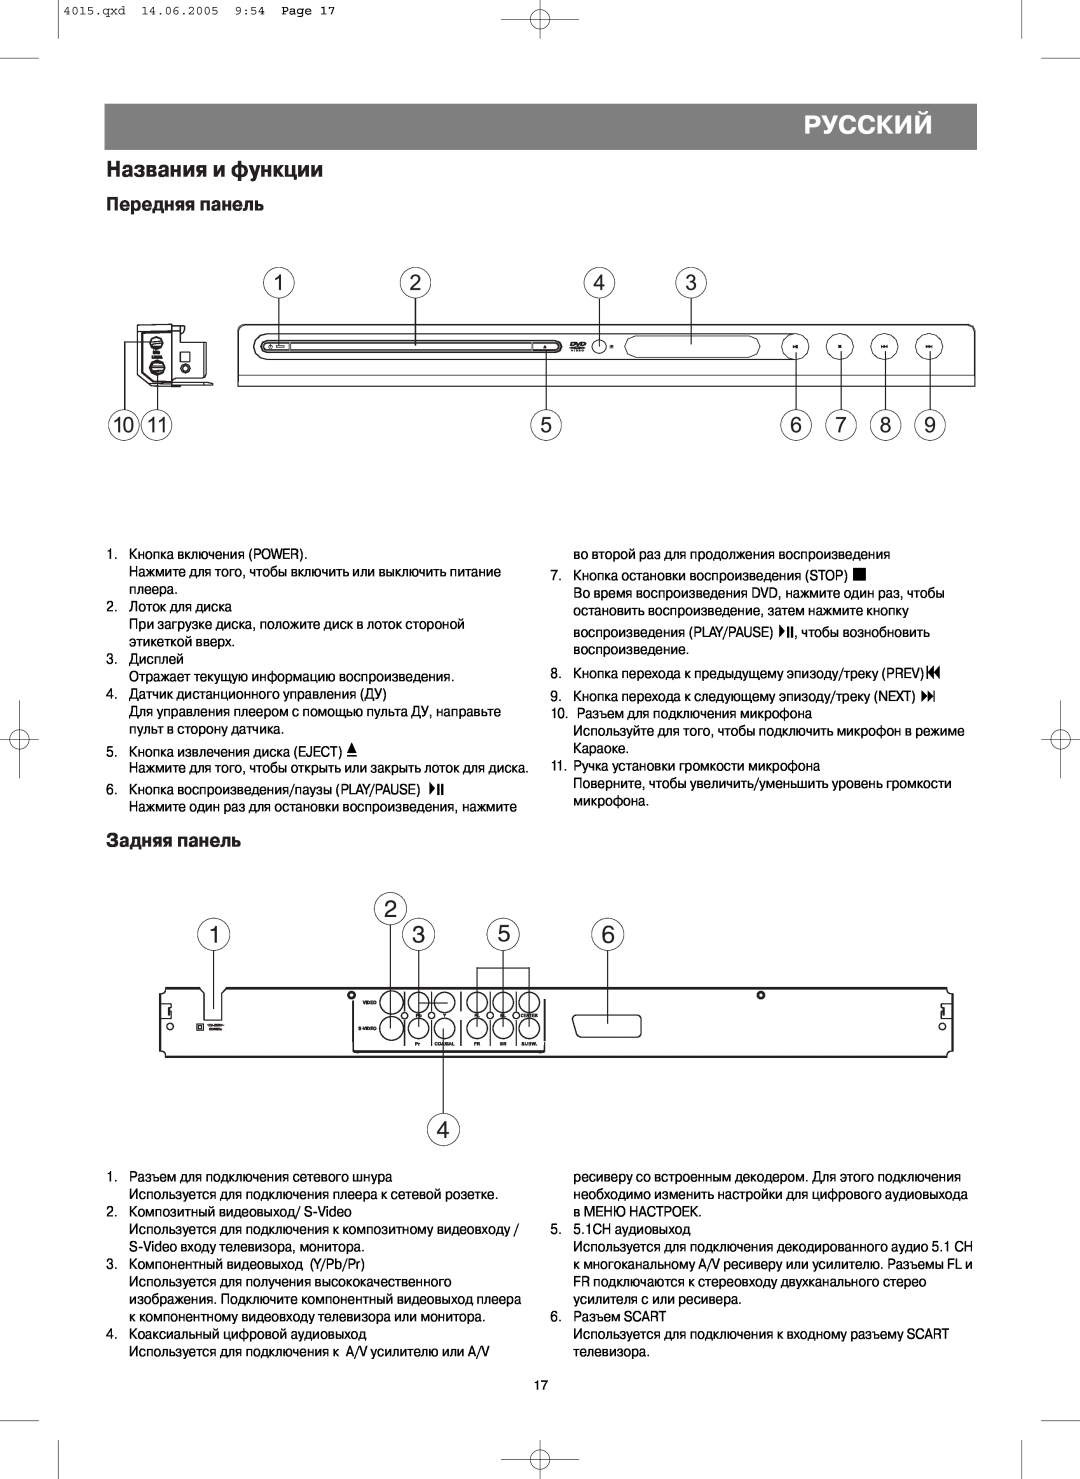 LG Electronics VT 4015 instruction manual Названия и функции, Передняя панель, Задняя панель, Русский 